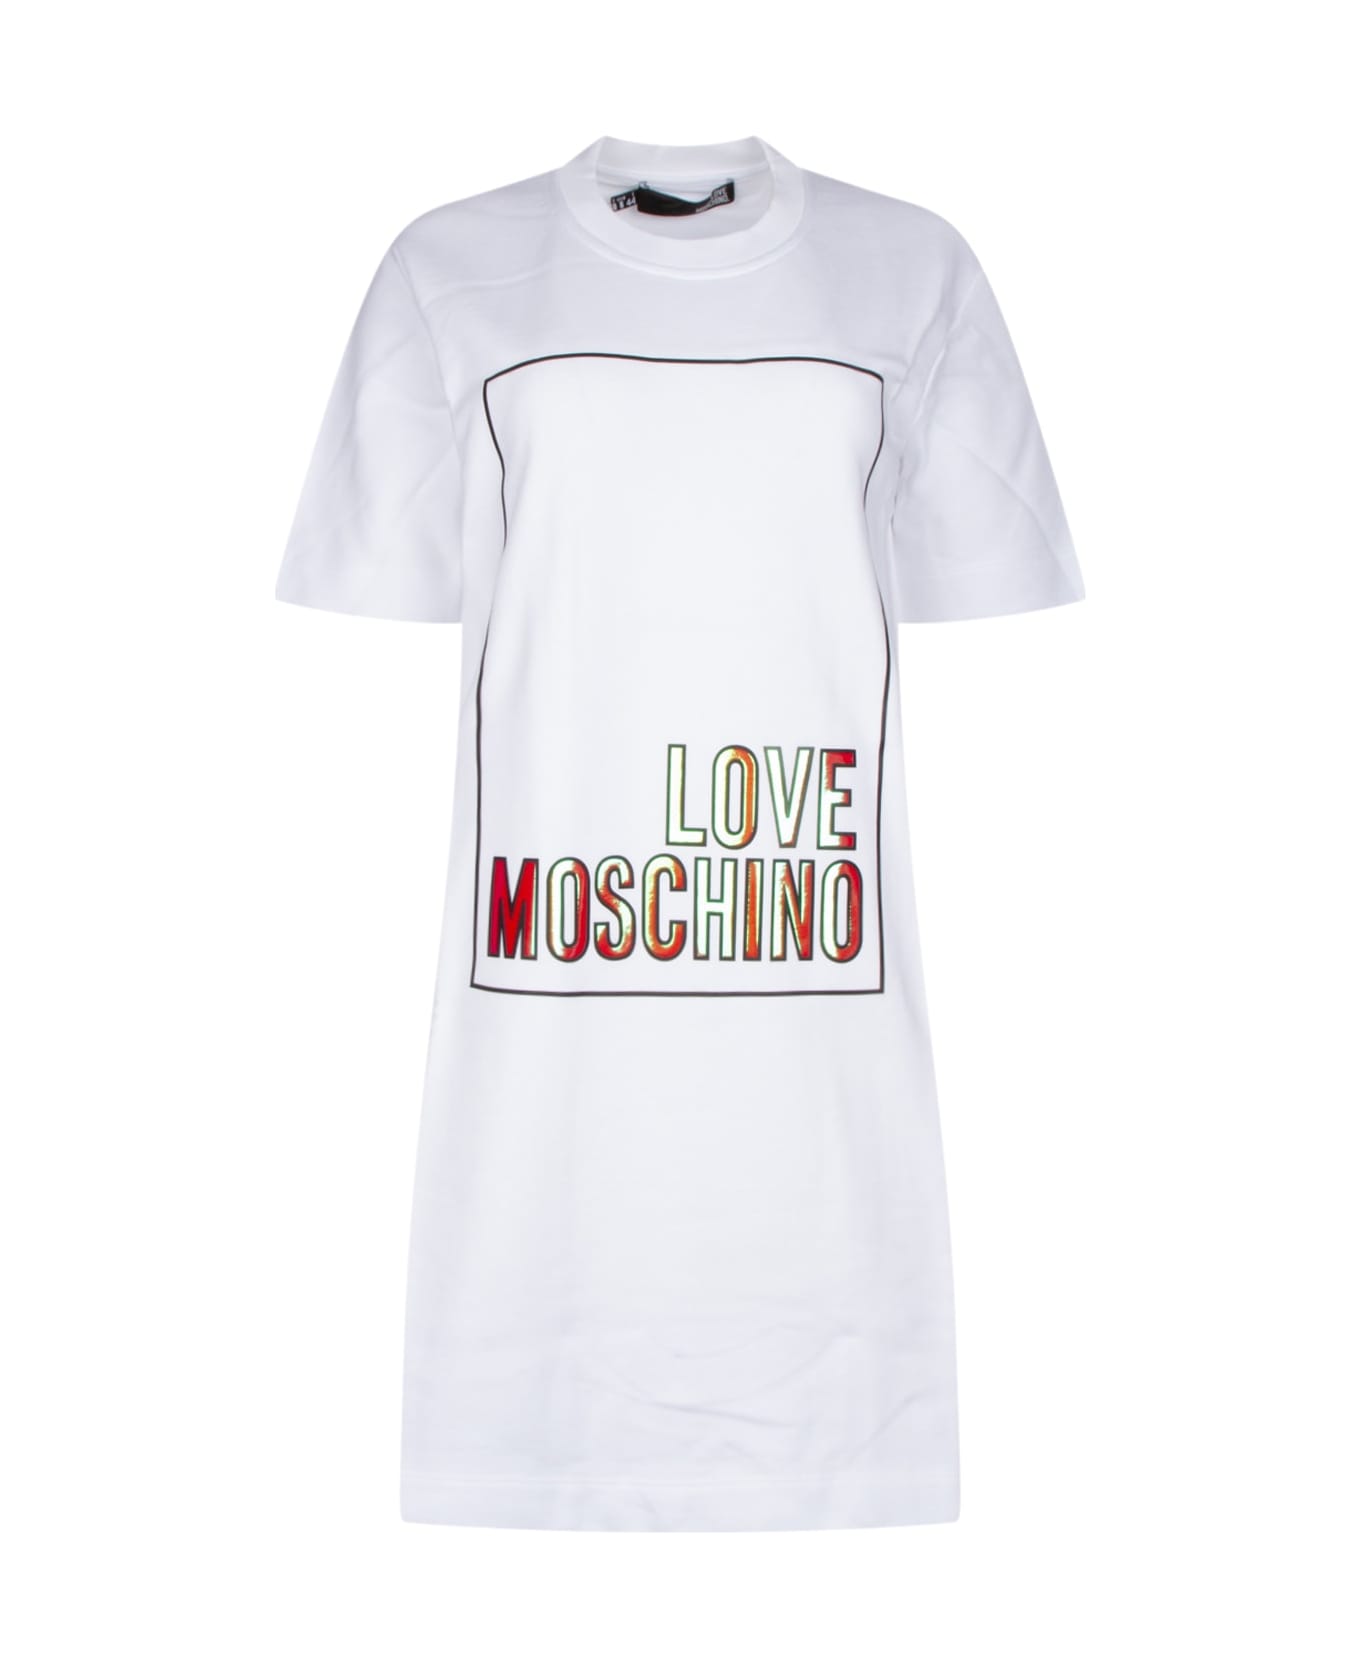 Love Moschino Abito - A00 Tシャツ